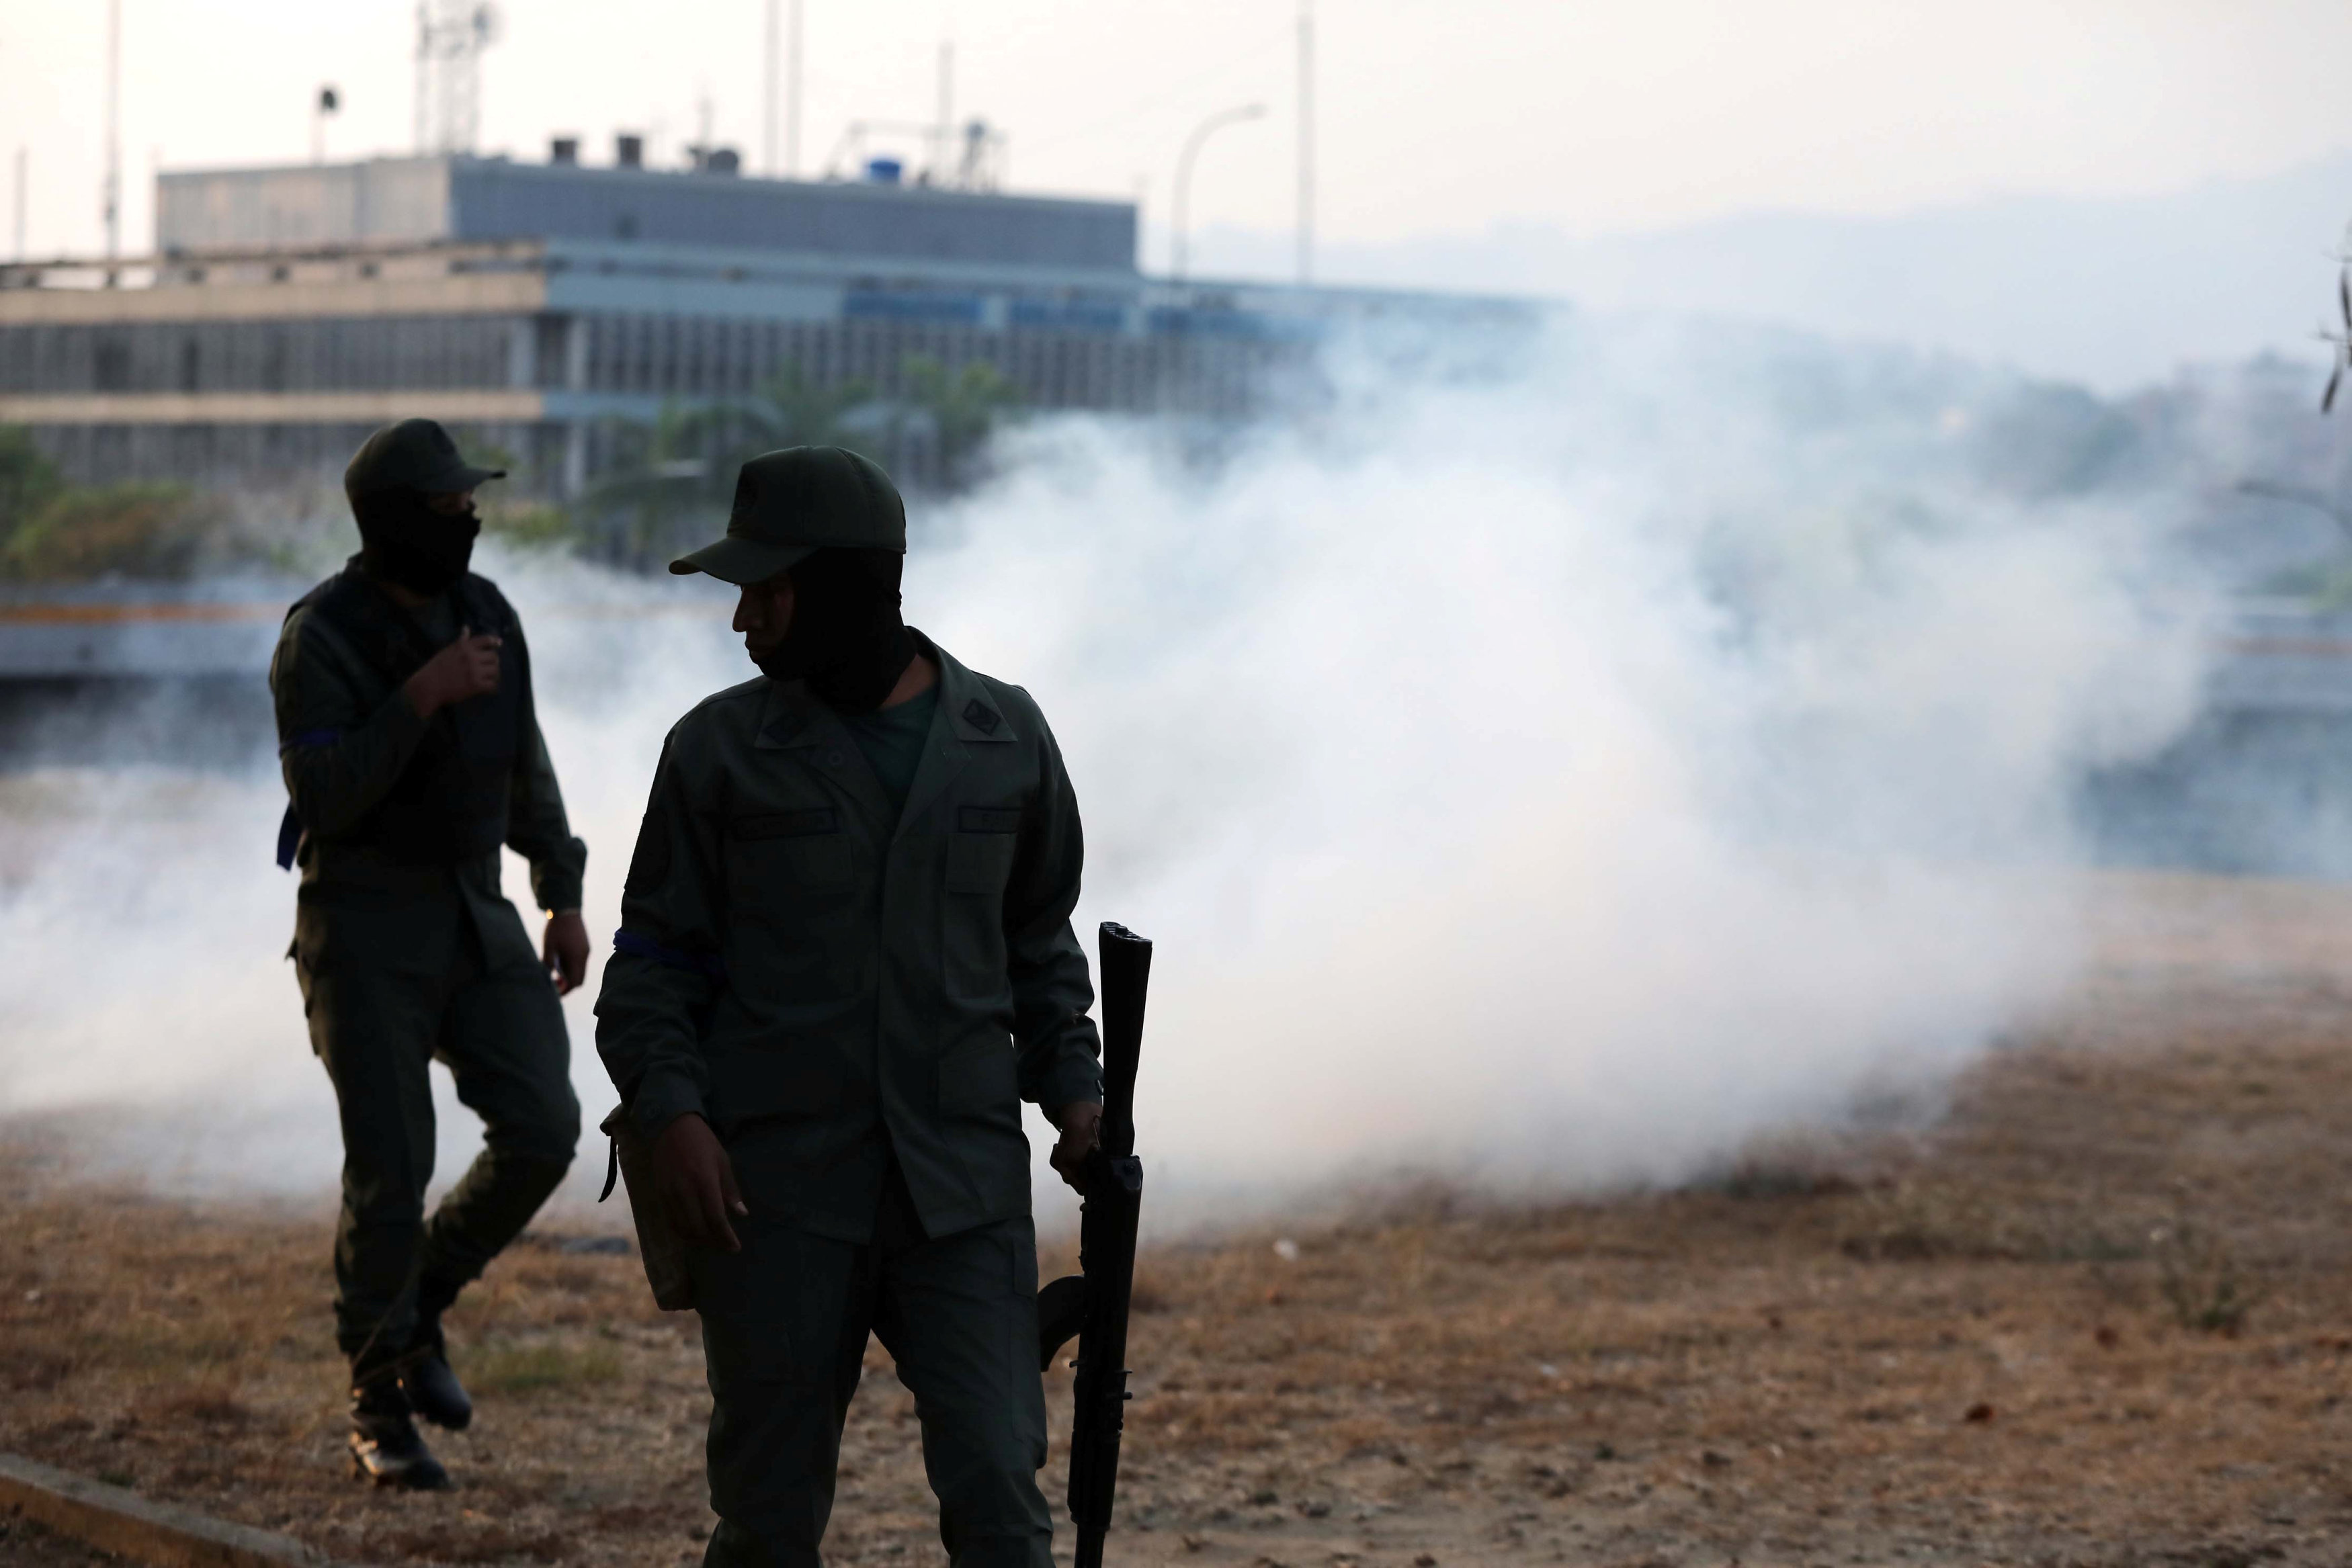 Flota gas lacrimógeno cerca de la concentración de militares y opositores políticos que se instalaron a las afueras de la base militar 'La Carlota' (Reuters)